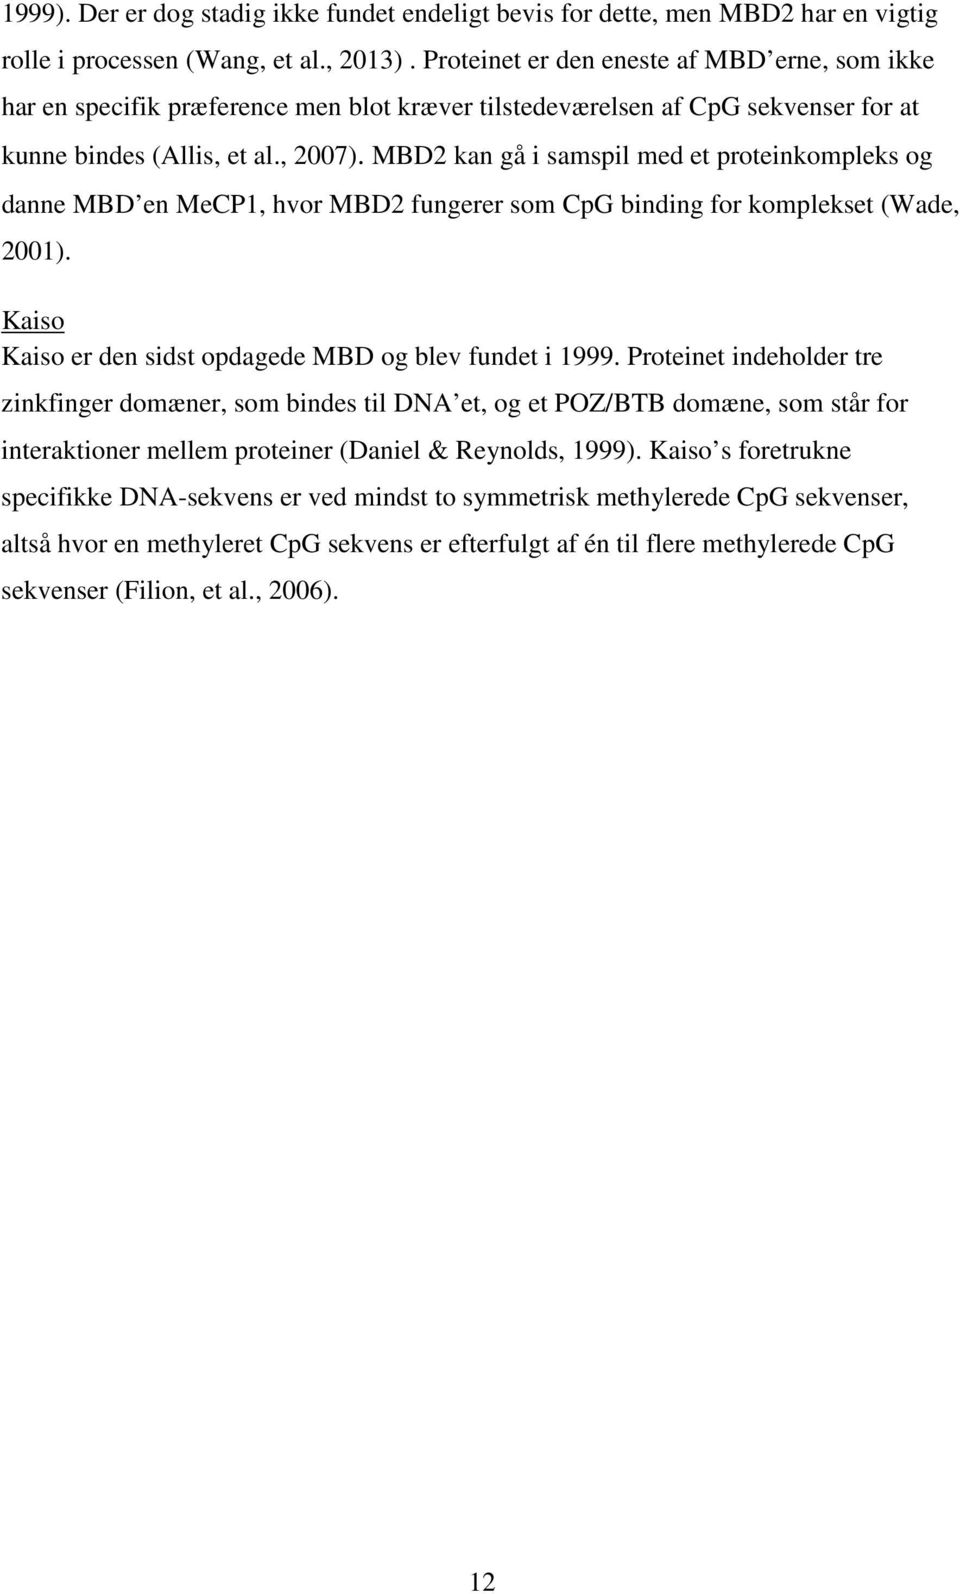 MBD2 kan gå i samspil med et proteinkompleks og danne MBD en MeCP1, hvor MBD2 fungerer som CpG binding for komplekset (Wade, 2001). Kaiso Kaiso er den sidst opdagede MBD og blev fundet i 1999.